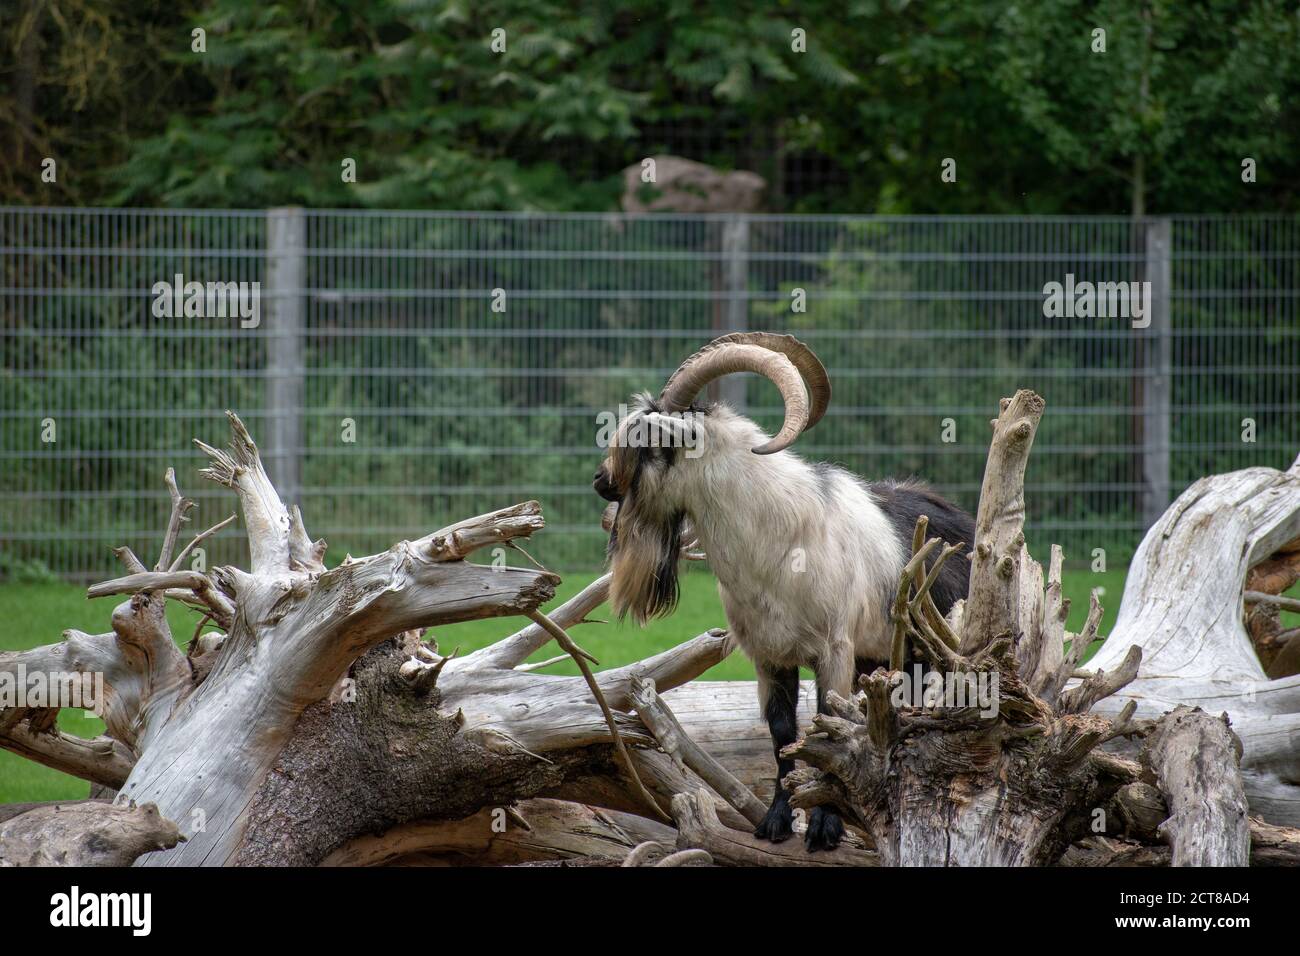 Capra con pelliccia lunga e corna in uno zoo Foto Stock